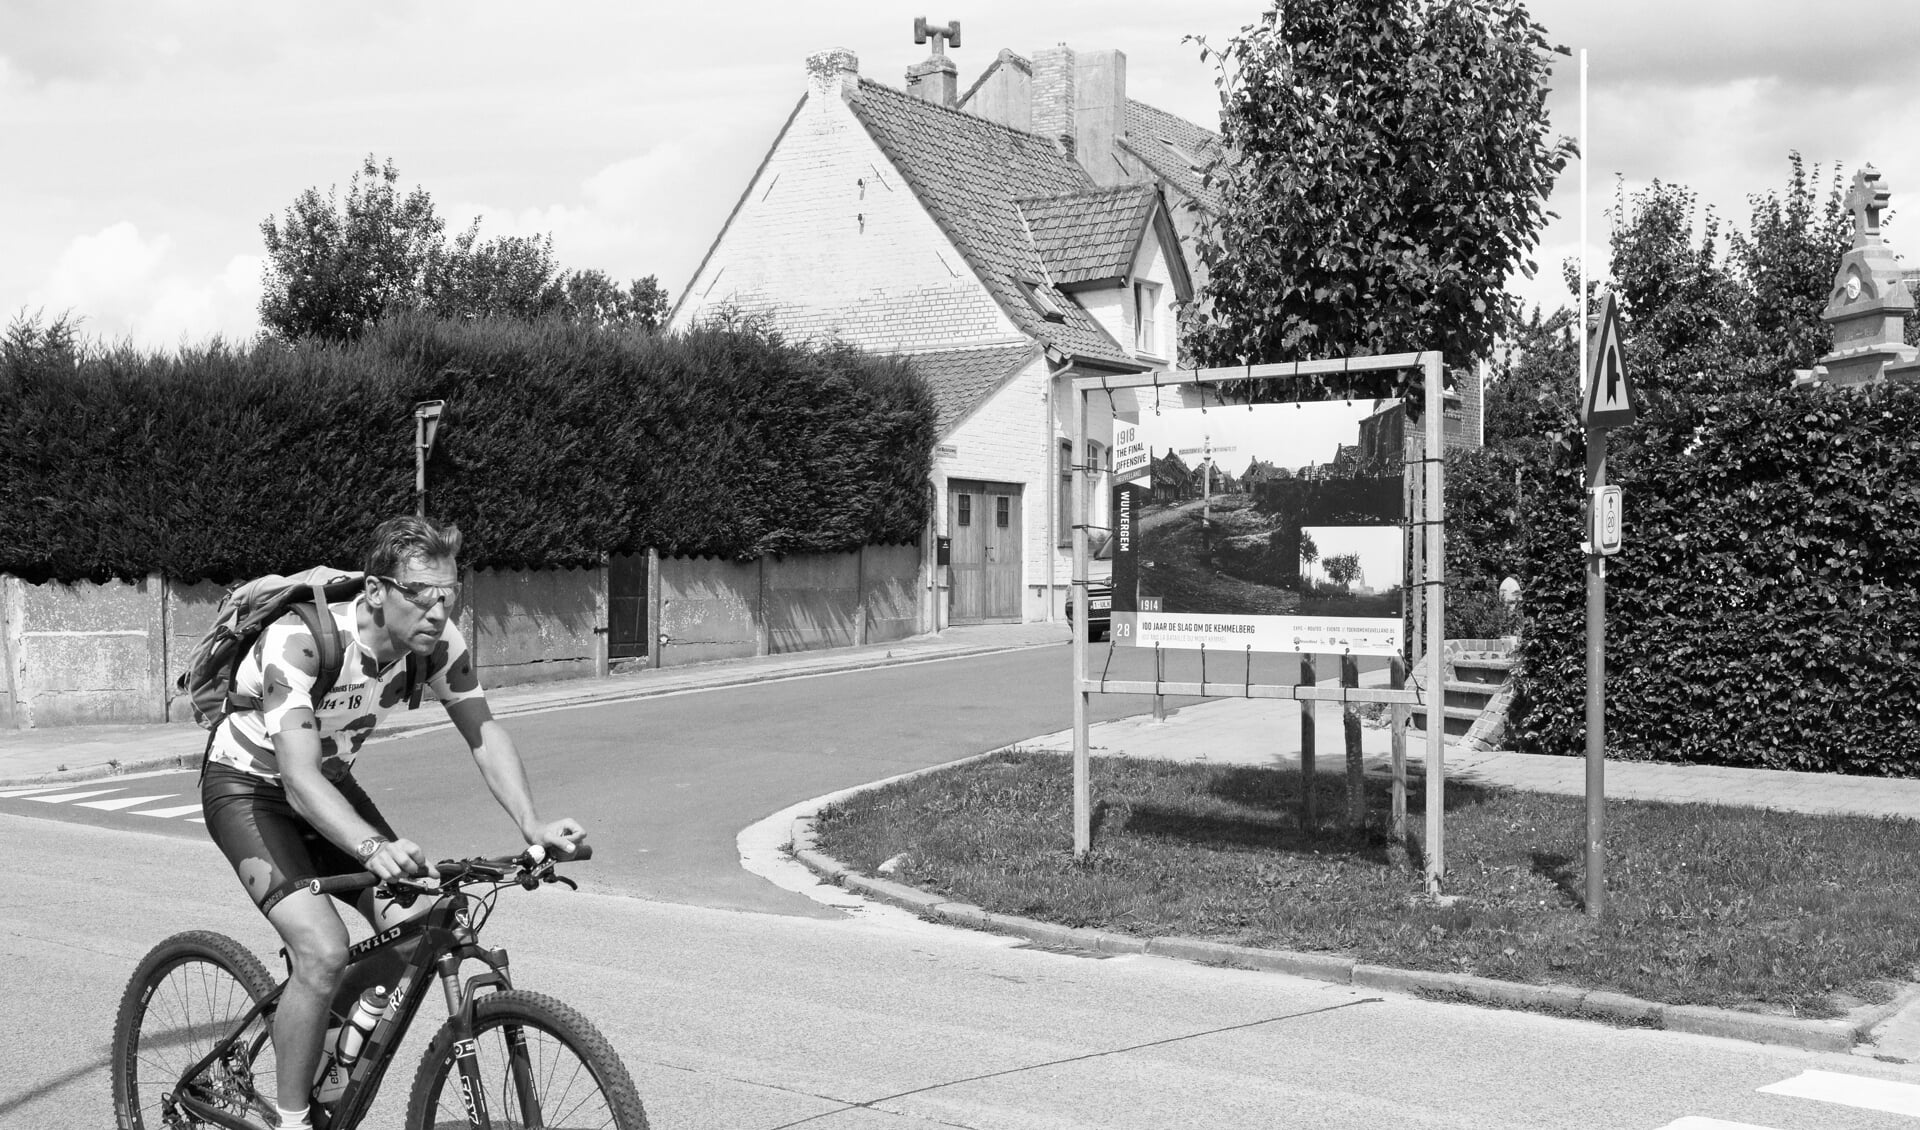 Wulvergem in de Belgische Westhoek. De man op de fiets draagt een shirt met klaprozen. De klaproos staat in Groot-Brittannië symbool voor de Eerste Wereldoorlog. Op het billboard wordt aandacht besteed aan 100 jaar Slag om de Kemmelberg